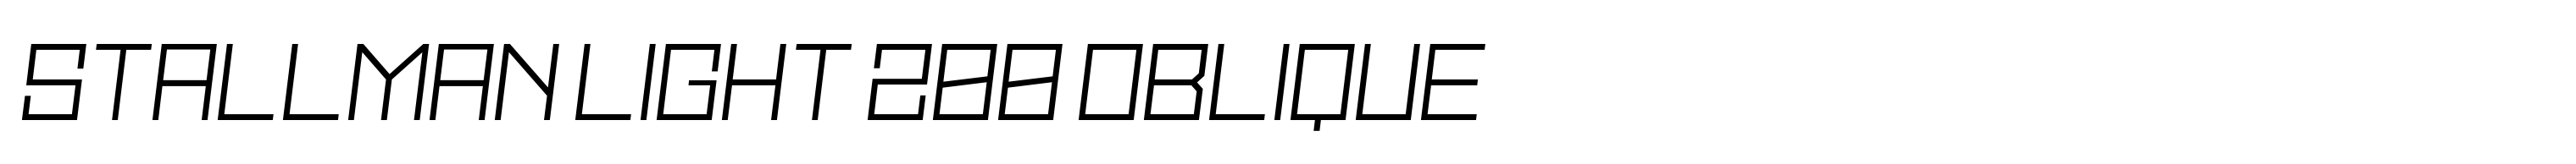 Stallman Light 200 Oblique